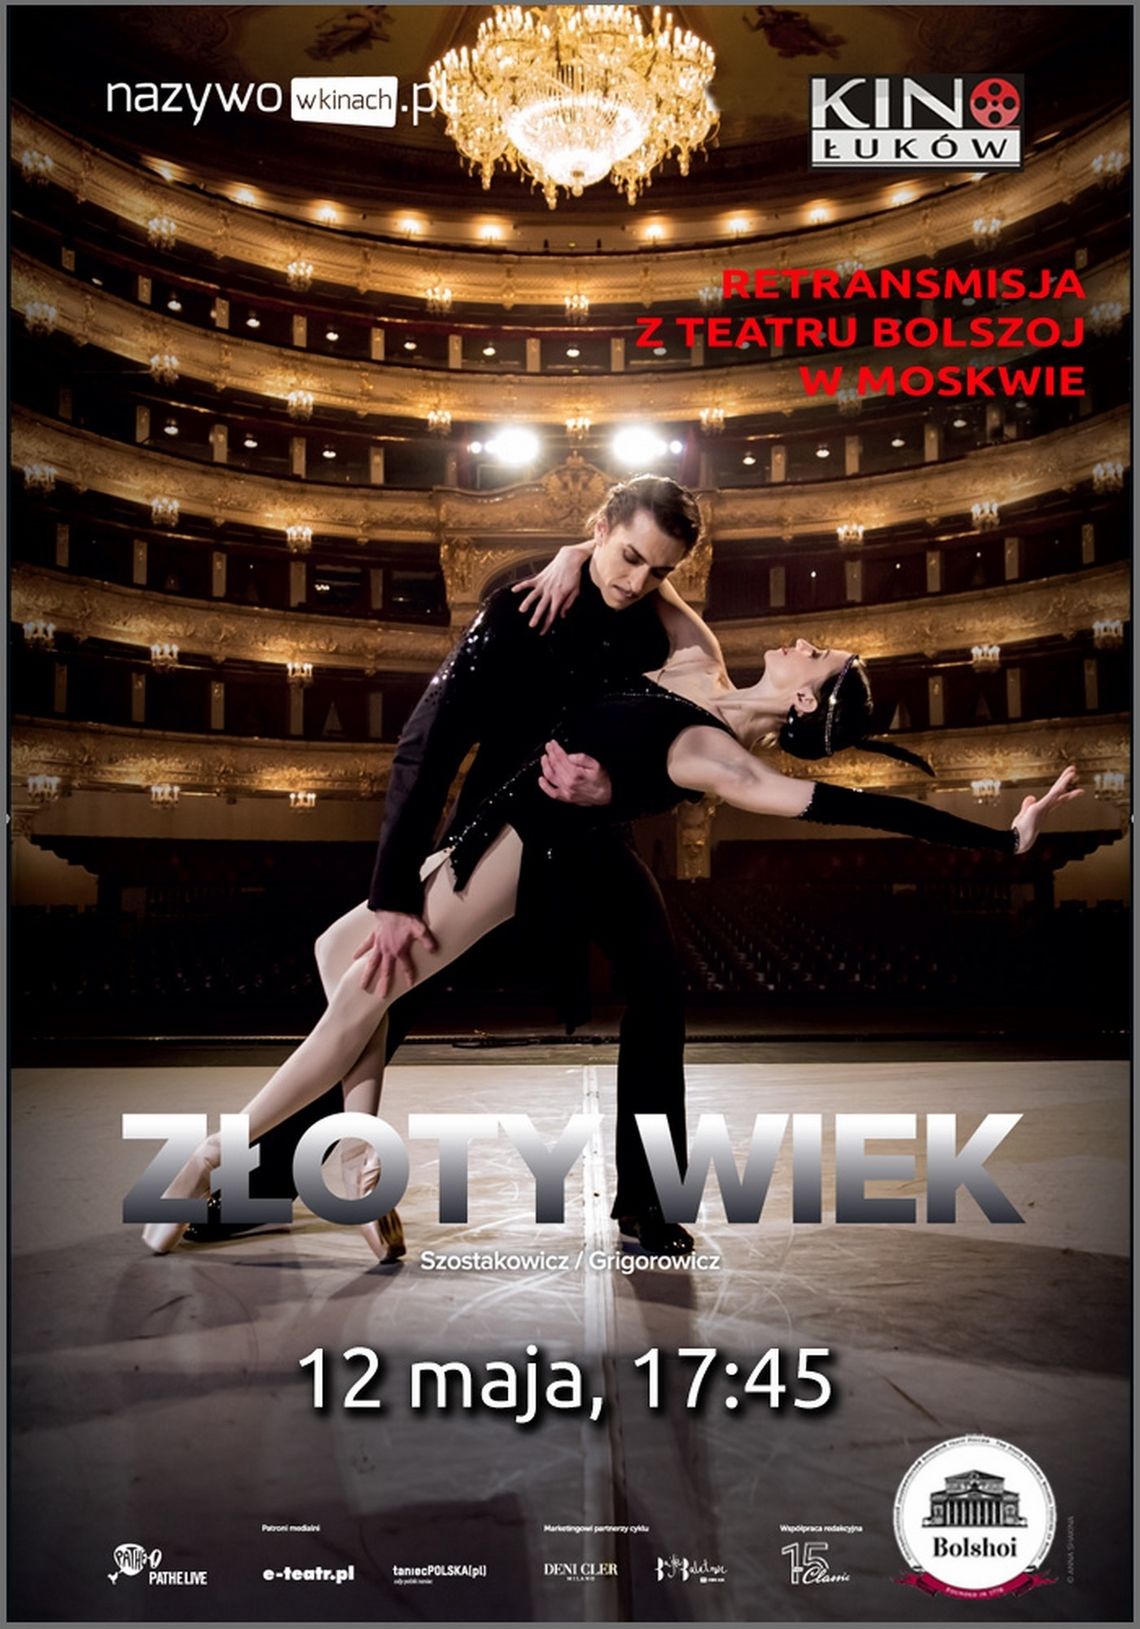 Retransmisja spektaklu baletowego z Teatru Bolszoj "Złoty Wiek" w Kinie Łuków /12 maja 2019